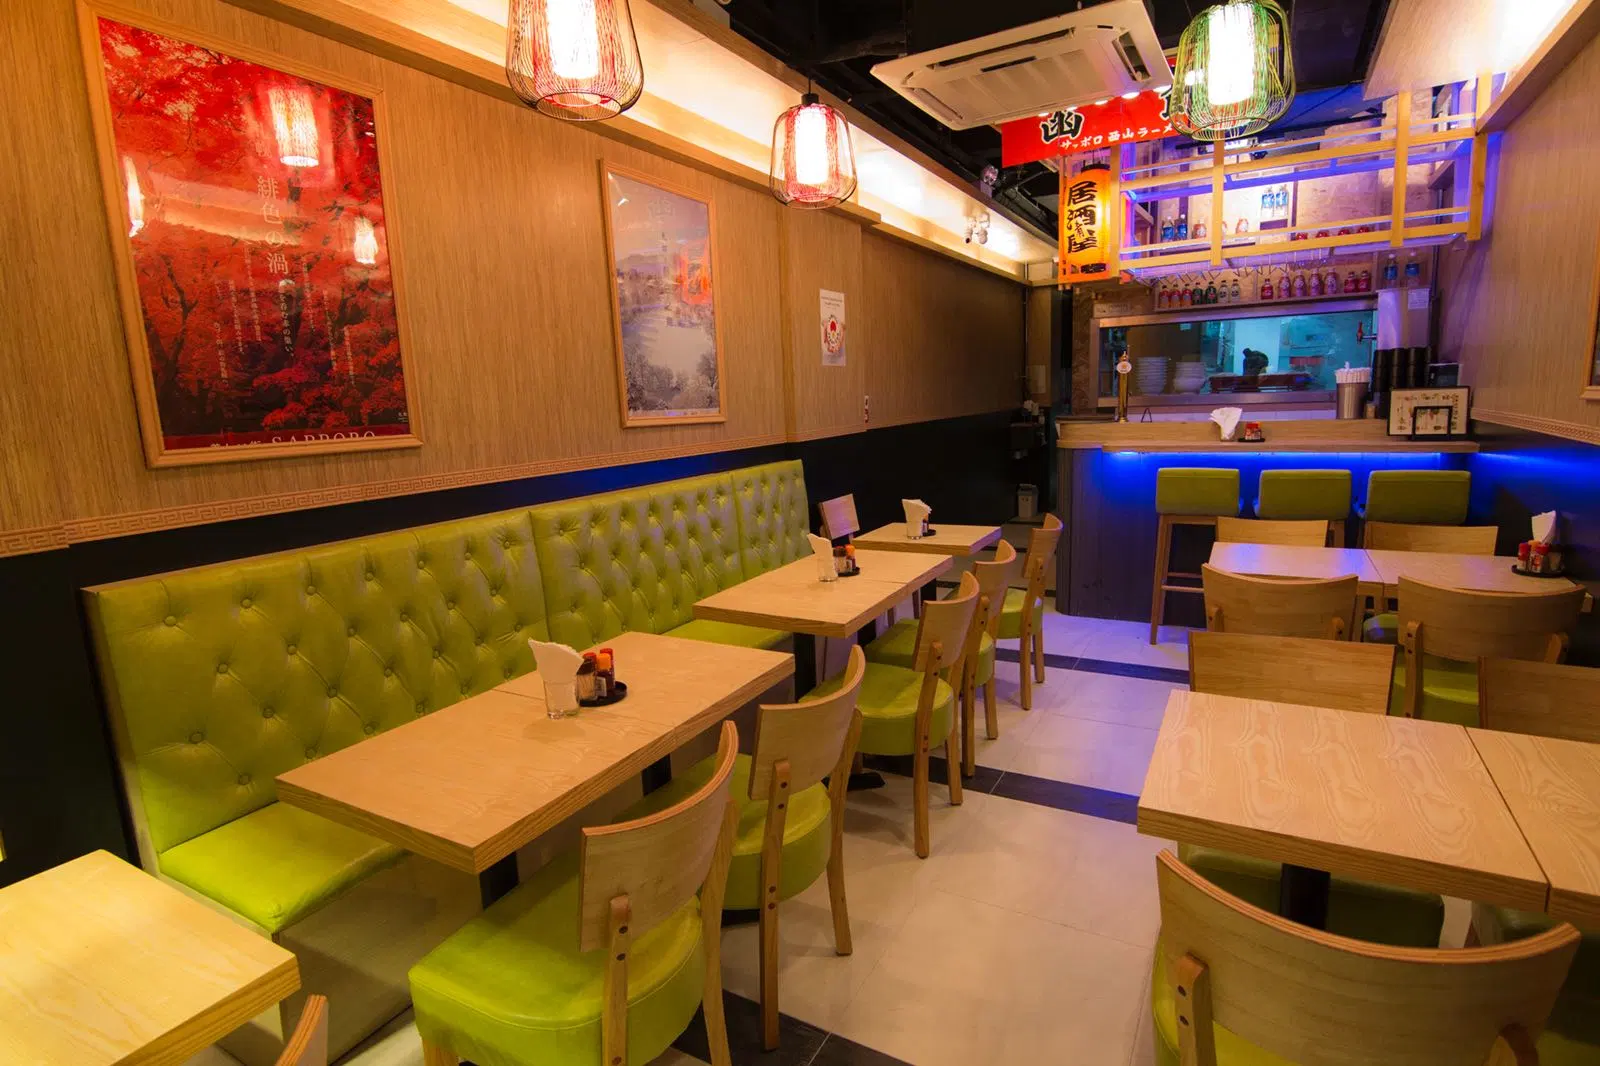 Le restaurant de style japonais meubles Table vert clair